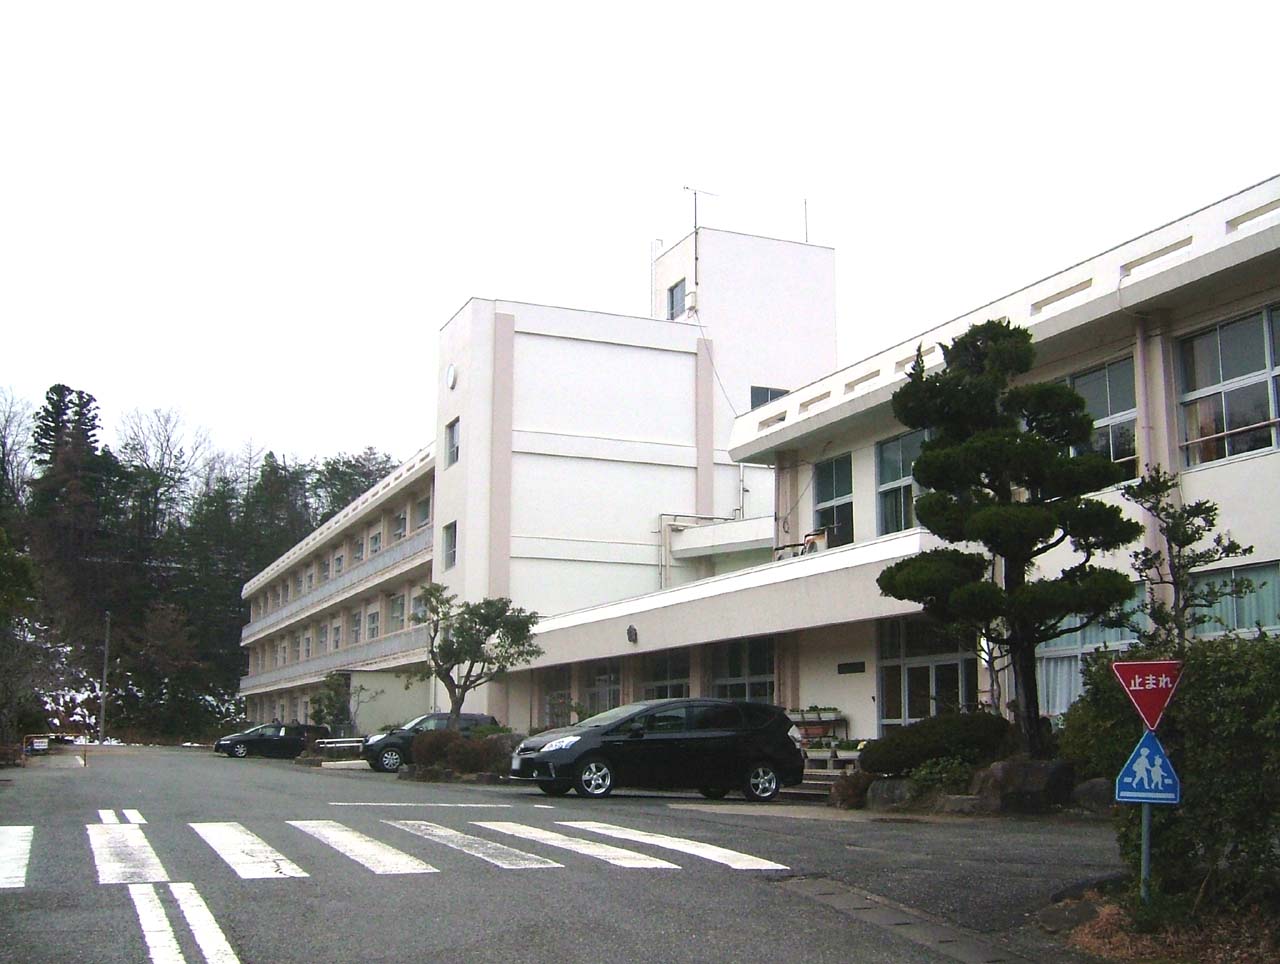 Primary school. Toyooka City Gosho to elementary school (elementary school) 2182m